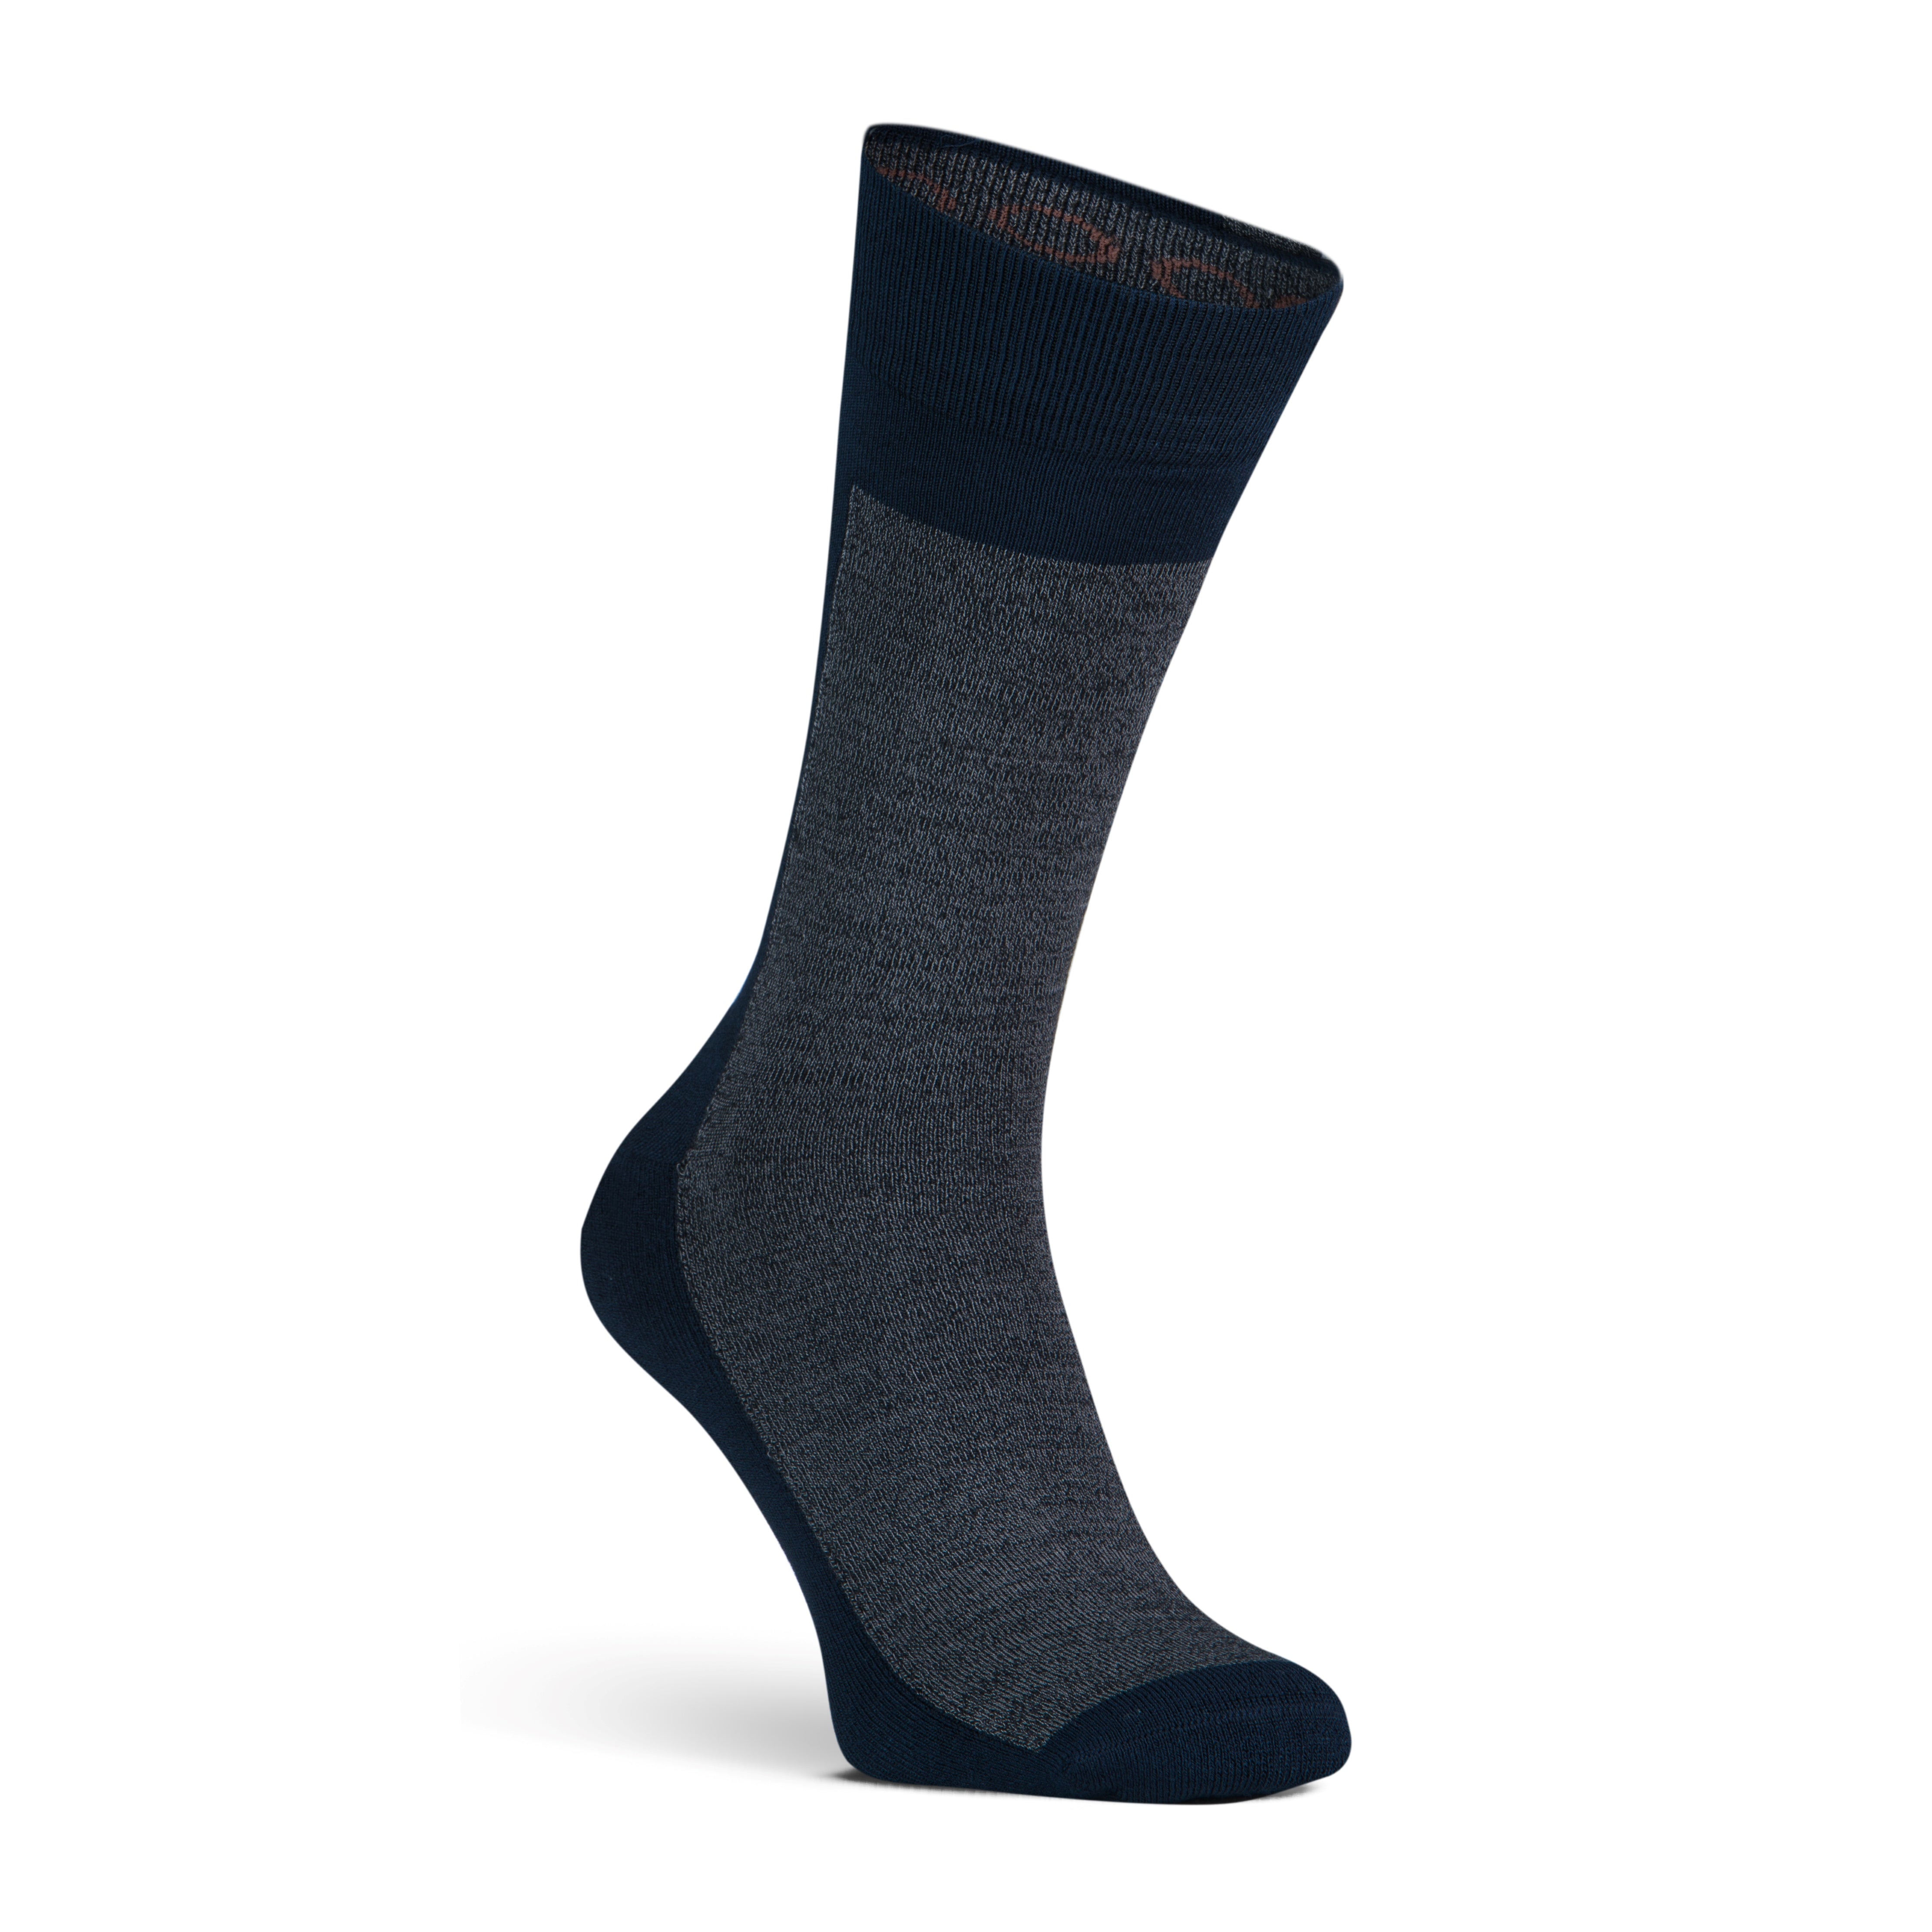 New York men's socks Anthracite